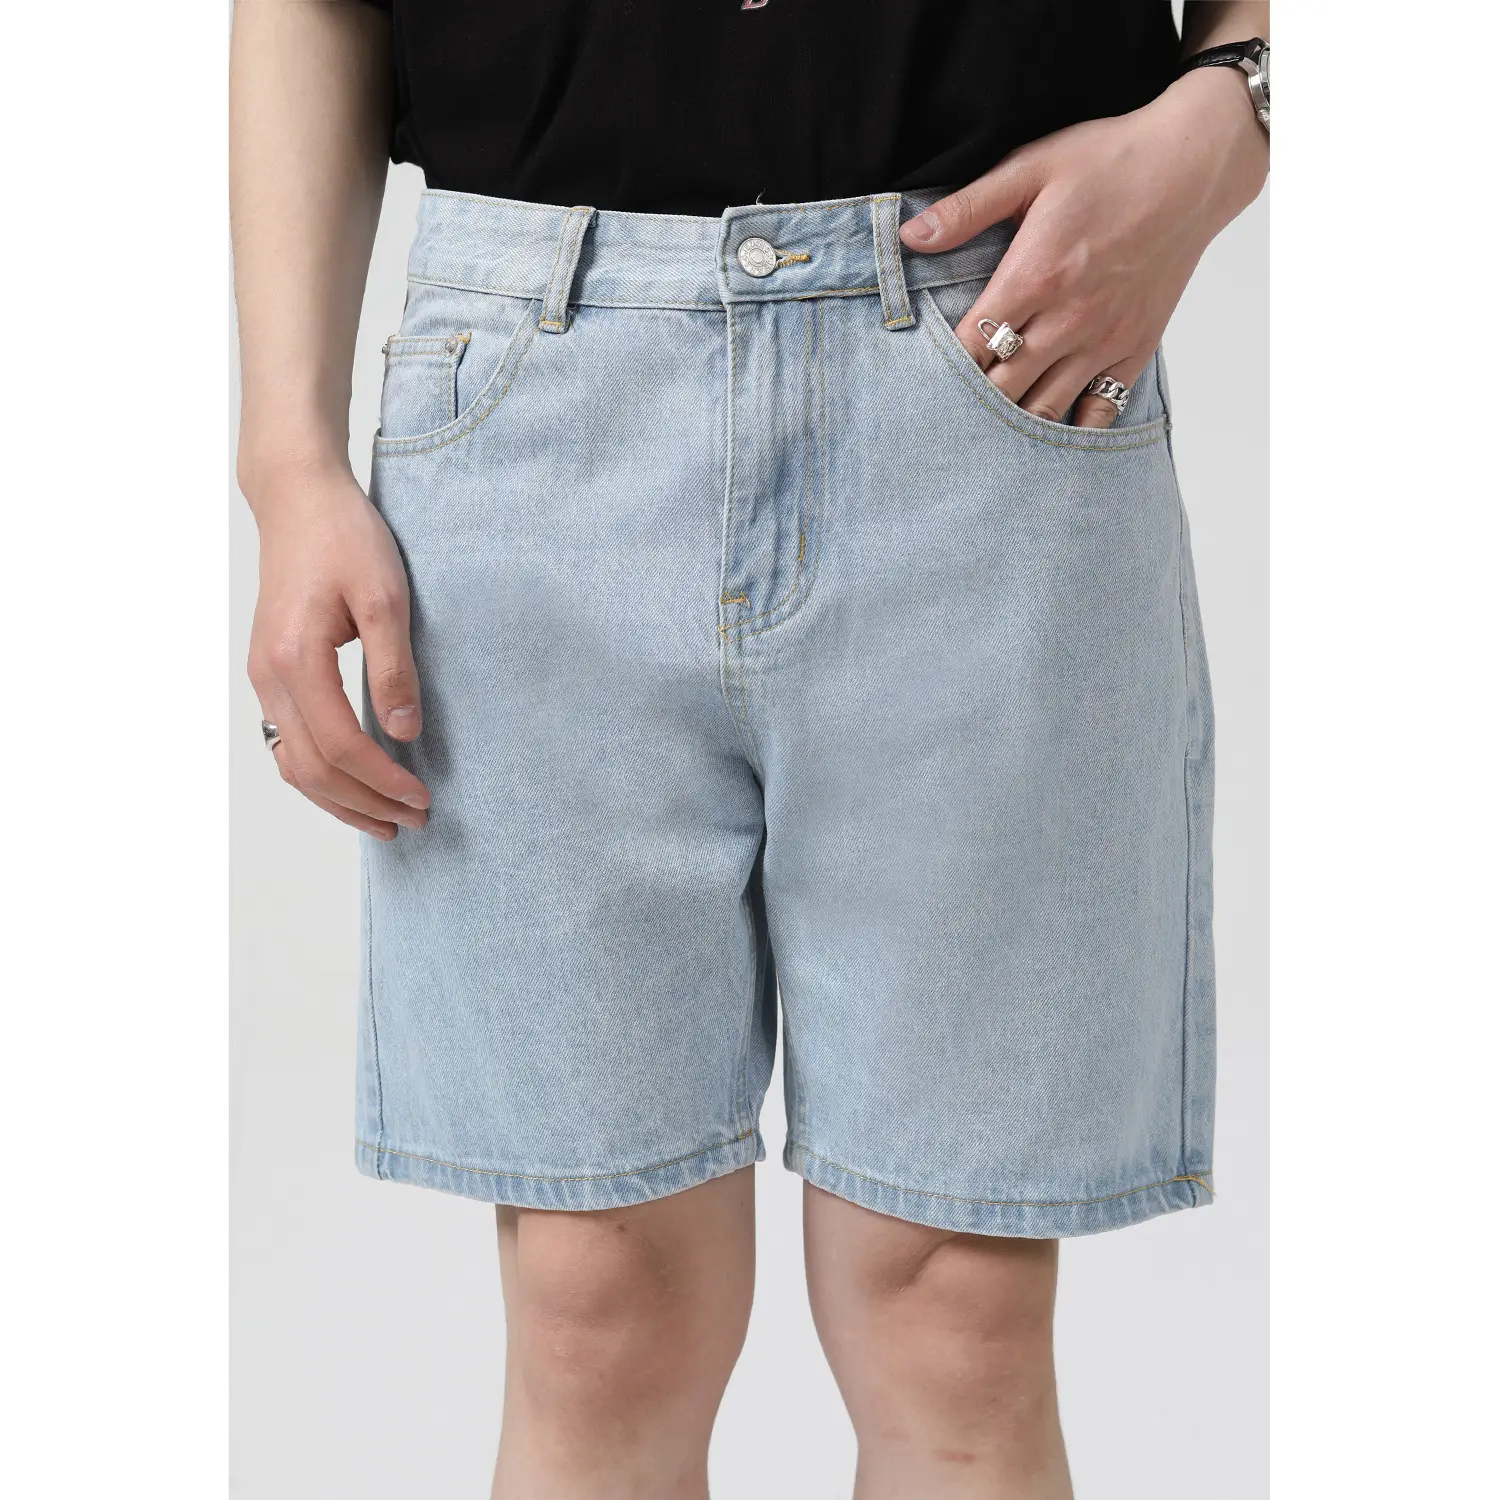 Pantalones cortos de mezclilla para hombre, Shorts ajustados informales con tendencia personalizada, Vaqueros cortos cónicos